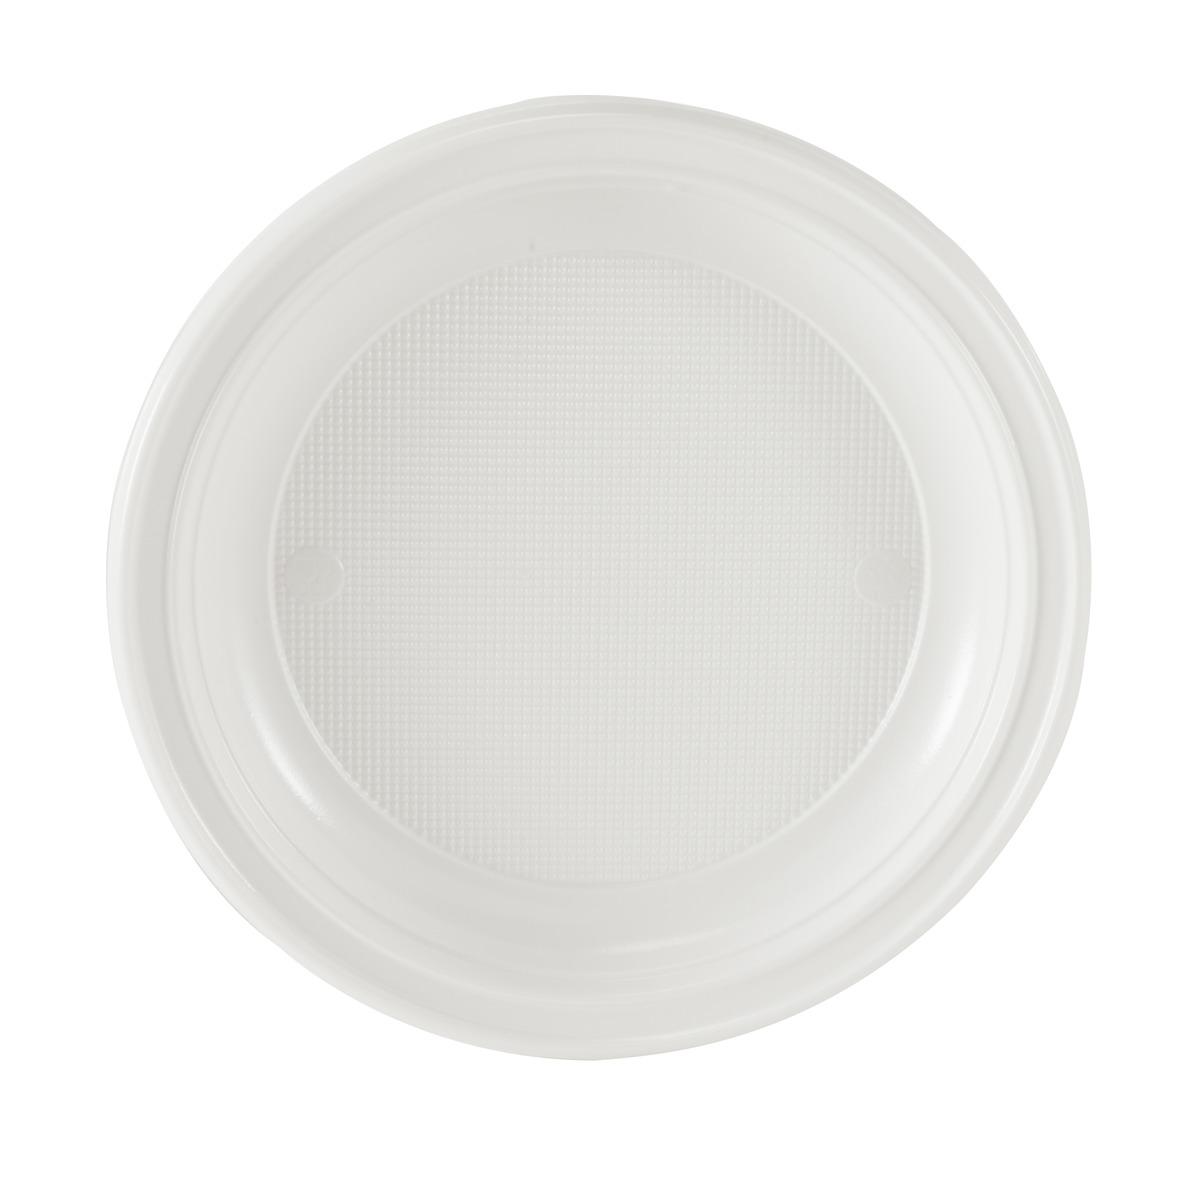 Lot de 30 assiettes en plastique rondes - 20,5 cm -Polystyrène- Blanc